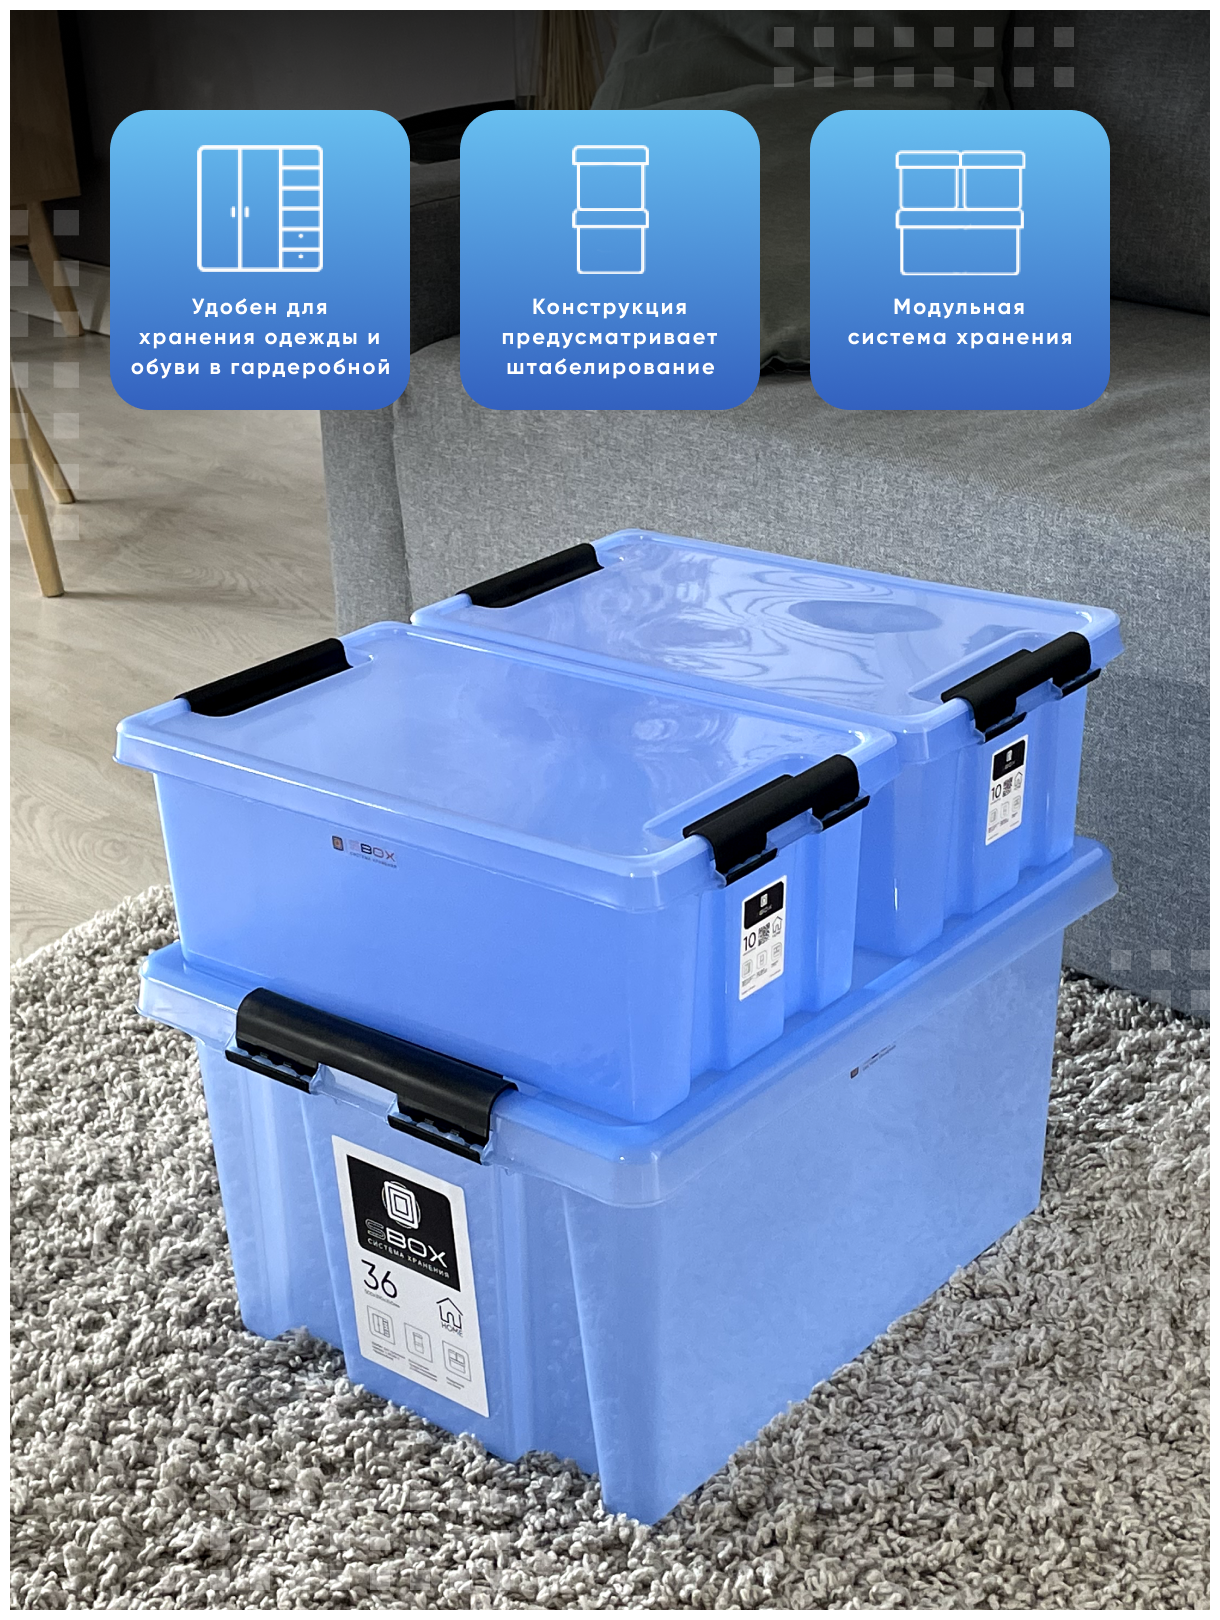 Контейнер пластиковый прозрачный синий с крышкой на защелках для хранения вещей, продуктов или игрушек, емкость 36л, 10л, 10л, набор 3 шт, SBOX - фотография № 2